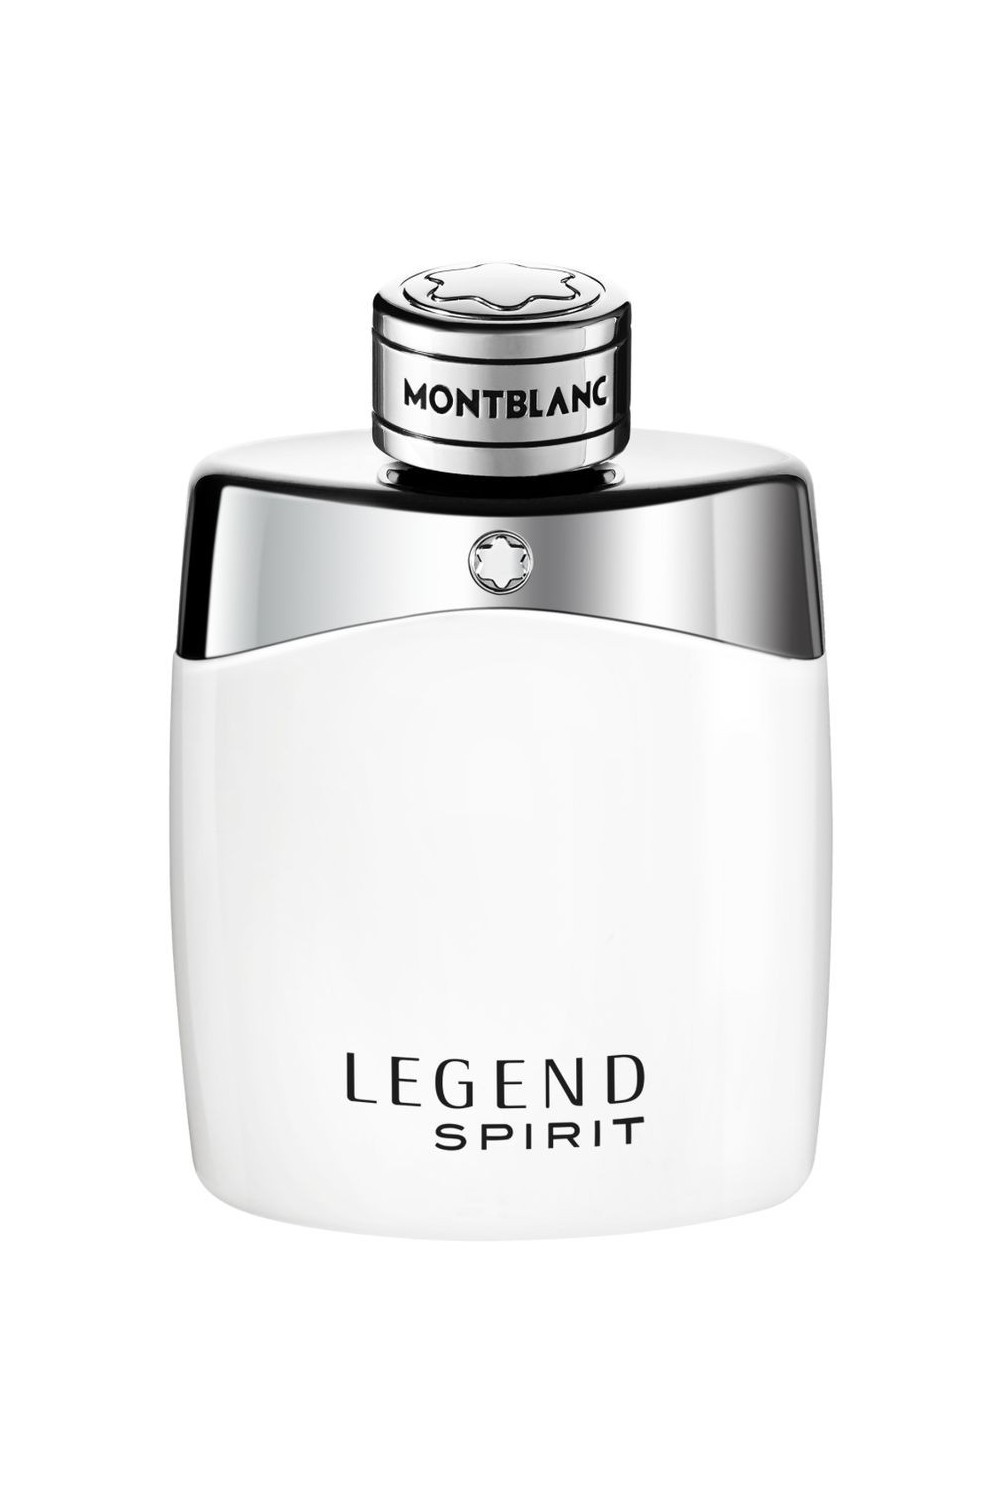 Montblanc Legend Spirit Eau De Toilette Spray 30ml